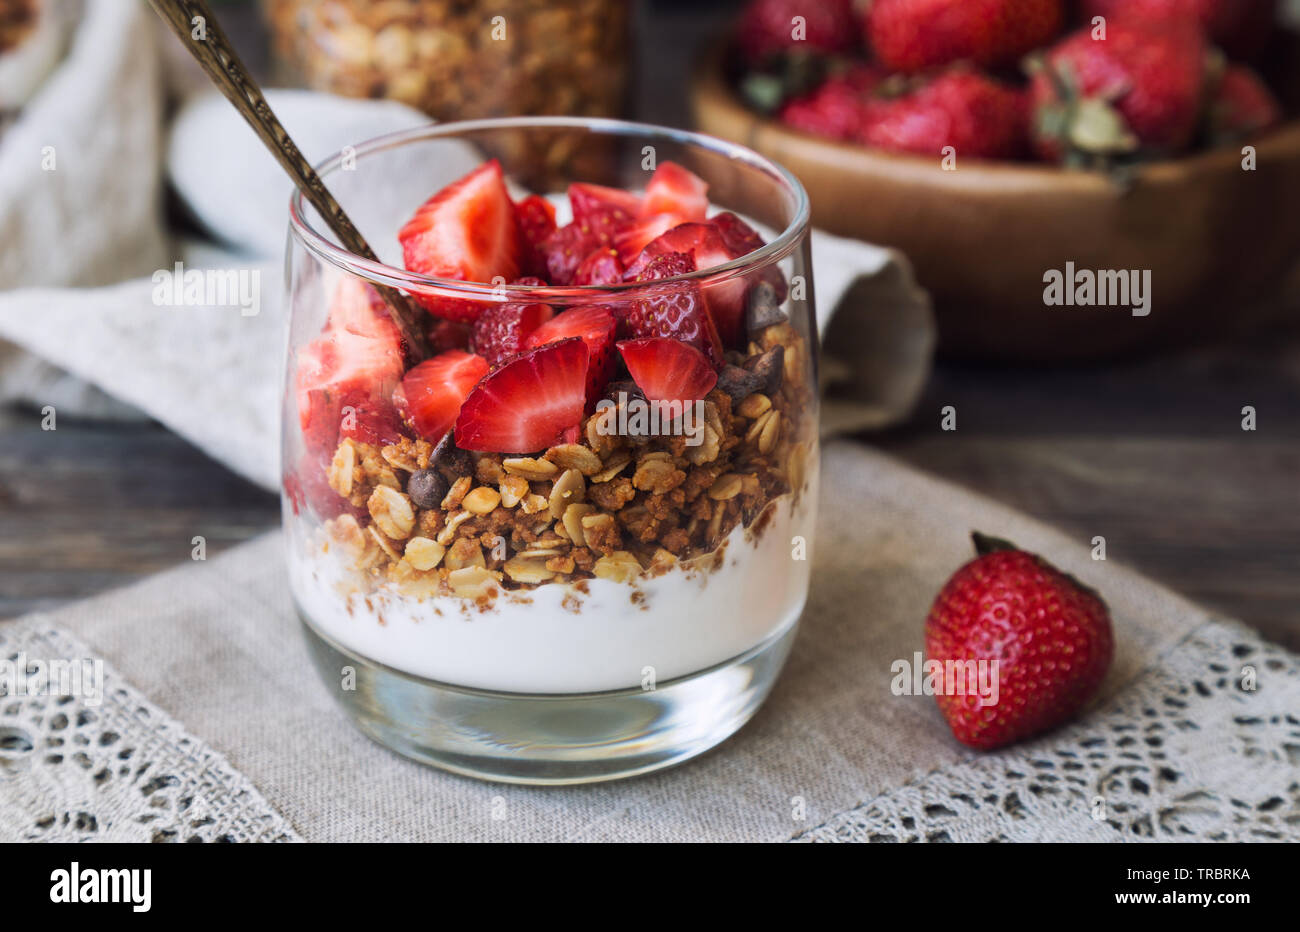 Hausgemachtes Müsli, Müsli mit Schokolade, Erdbeeren und Joghurt im Glas  auf rustikalen Holzmöbeln Hintergrund. Gesundes Frühstück Stockfotografie -  Alamy